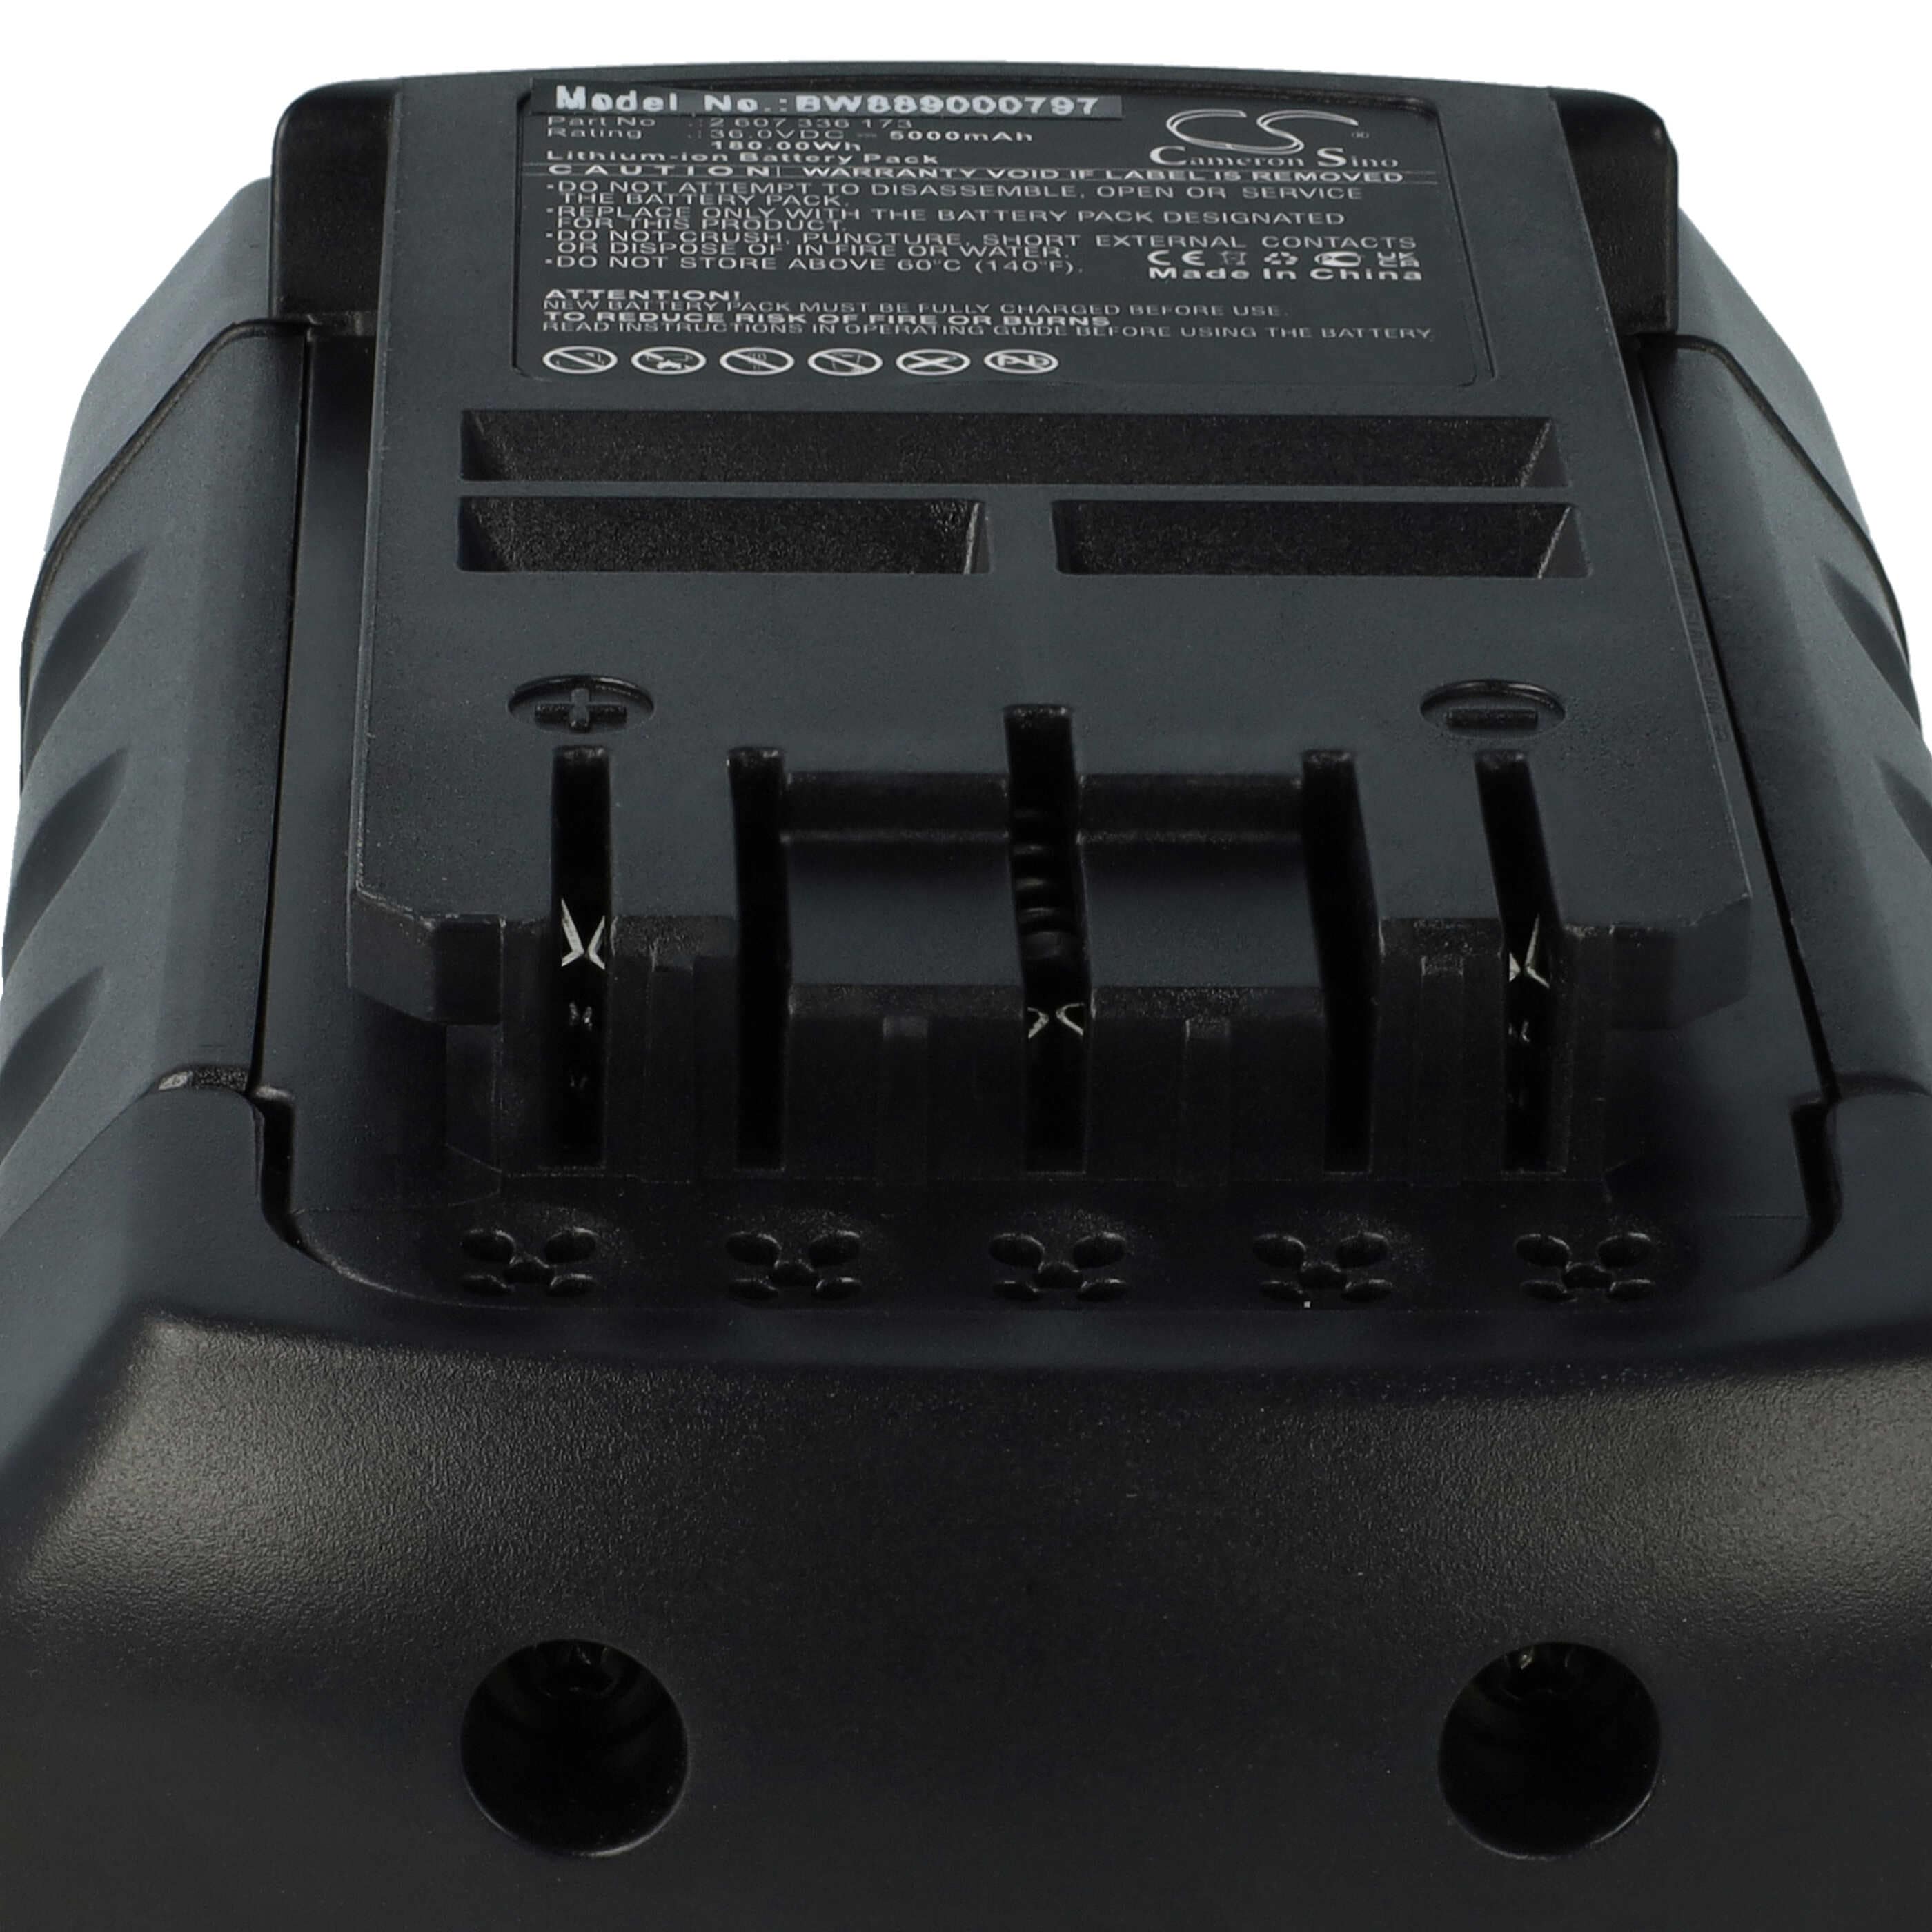 Akumulator do robota koszącego zamiennik Bosch 1600A0022N - 5000 mAh 36 V Li-Ion, czarny / czerwony